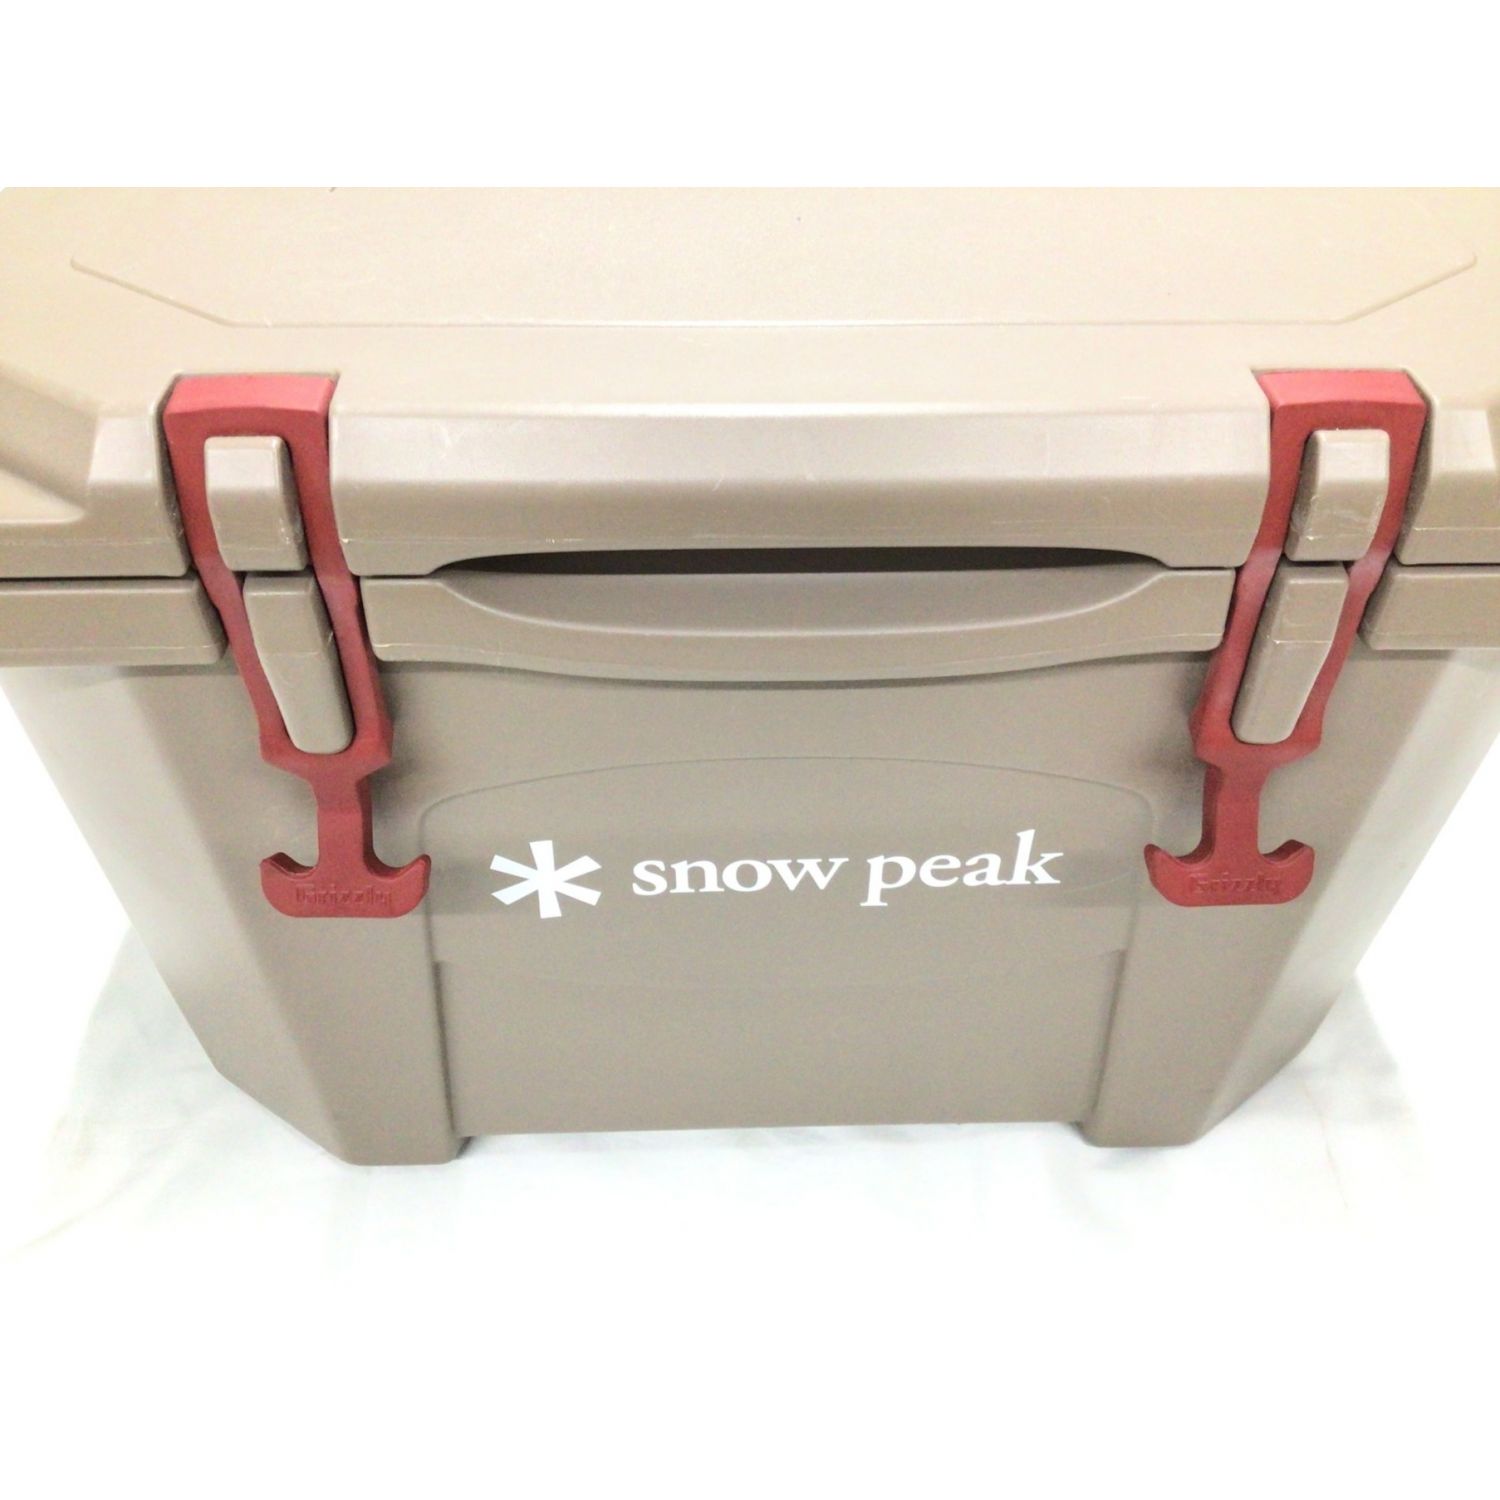 snow peak×Grizzly クーラーボックス 20QT ブラウン 廃盤品 ハード